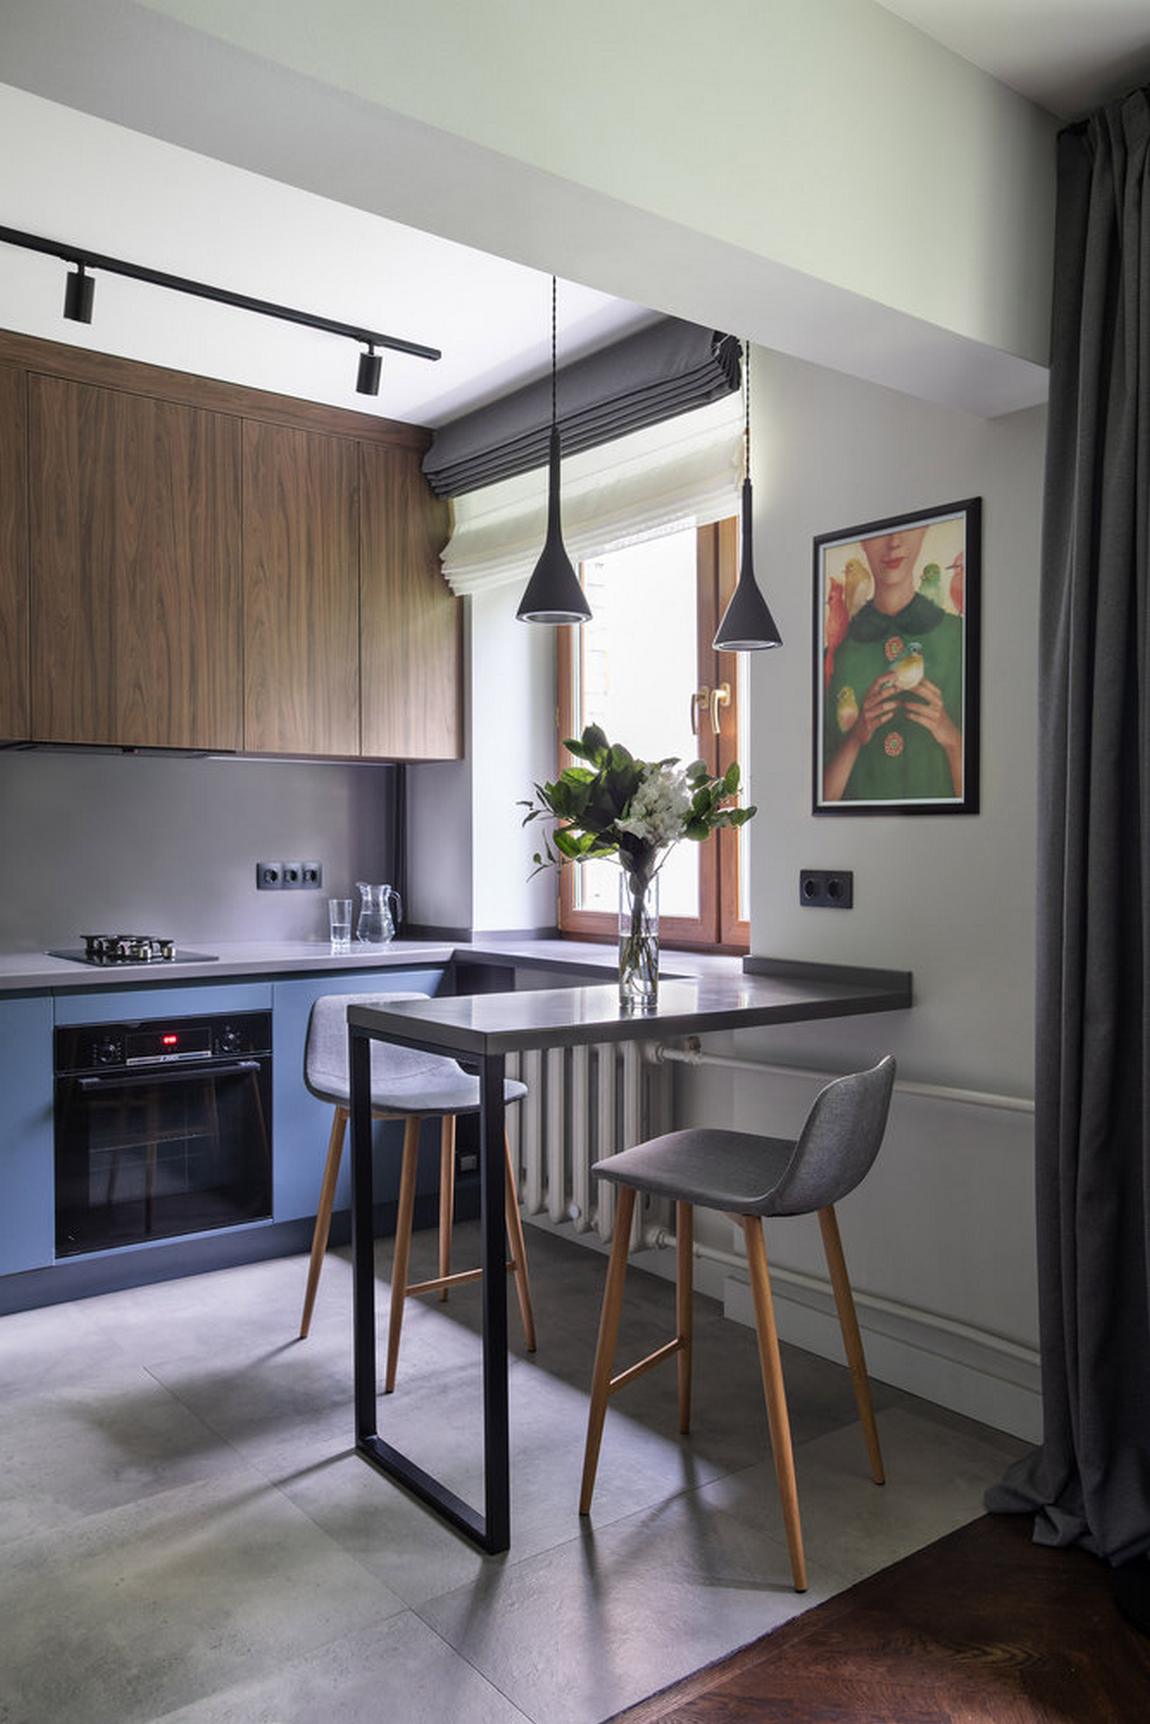 Phòng bếp kiểu chữ I gọn gàng và tạo lối đi thông thoáng. Sự tương phản giữa tủ bếp trên bằng gỗ tối màu và hệ tủ bếp dưới màu xanh lam càng thêm phần đẹp mắt.